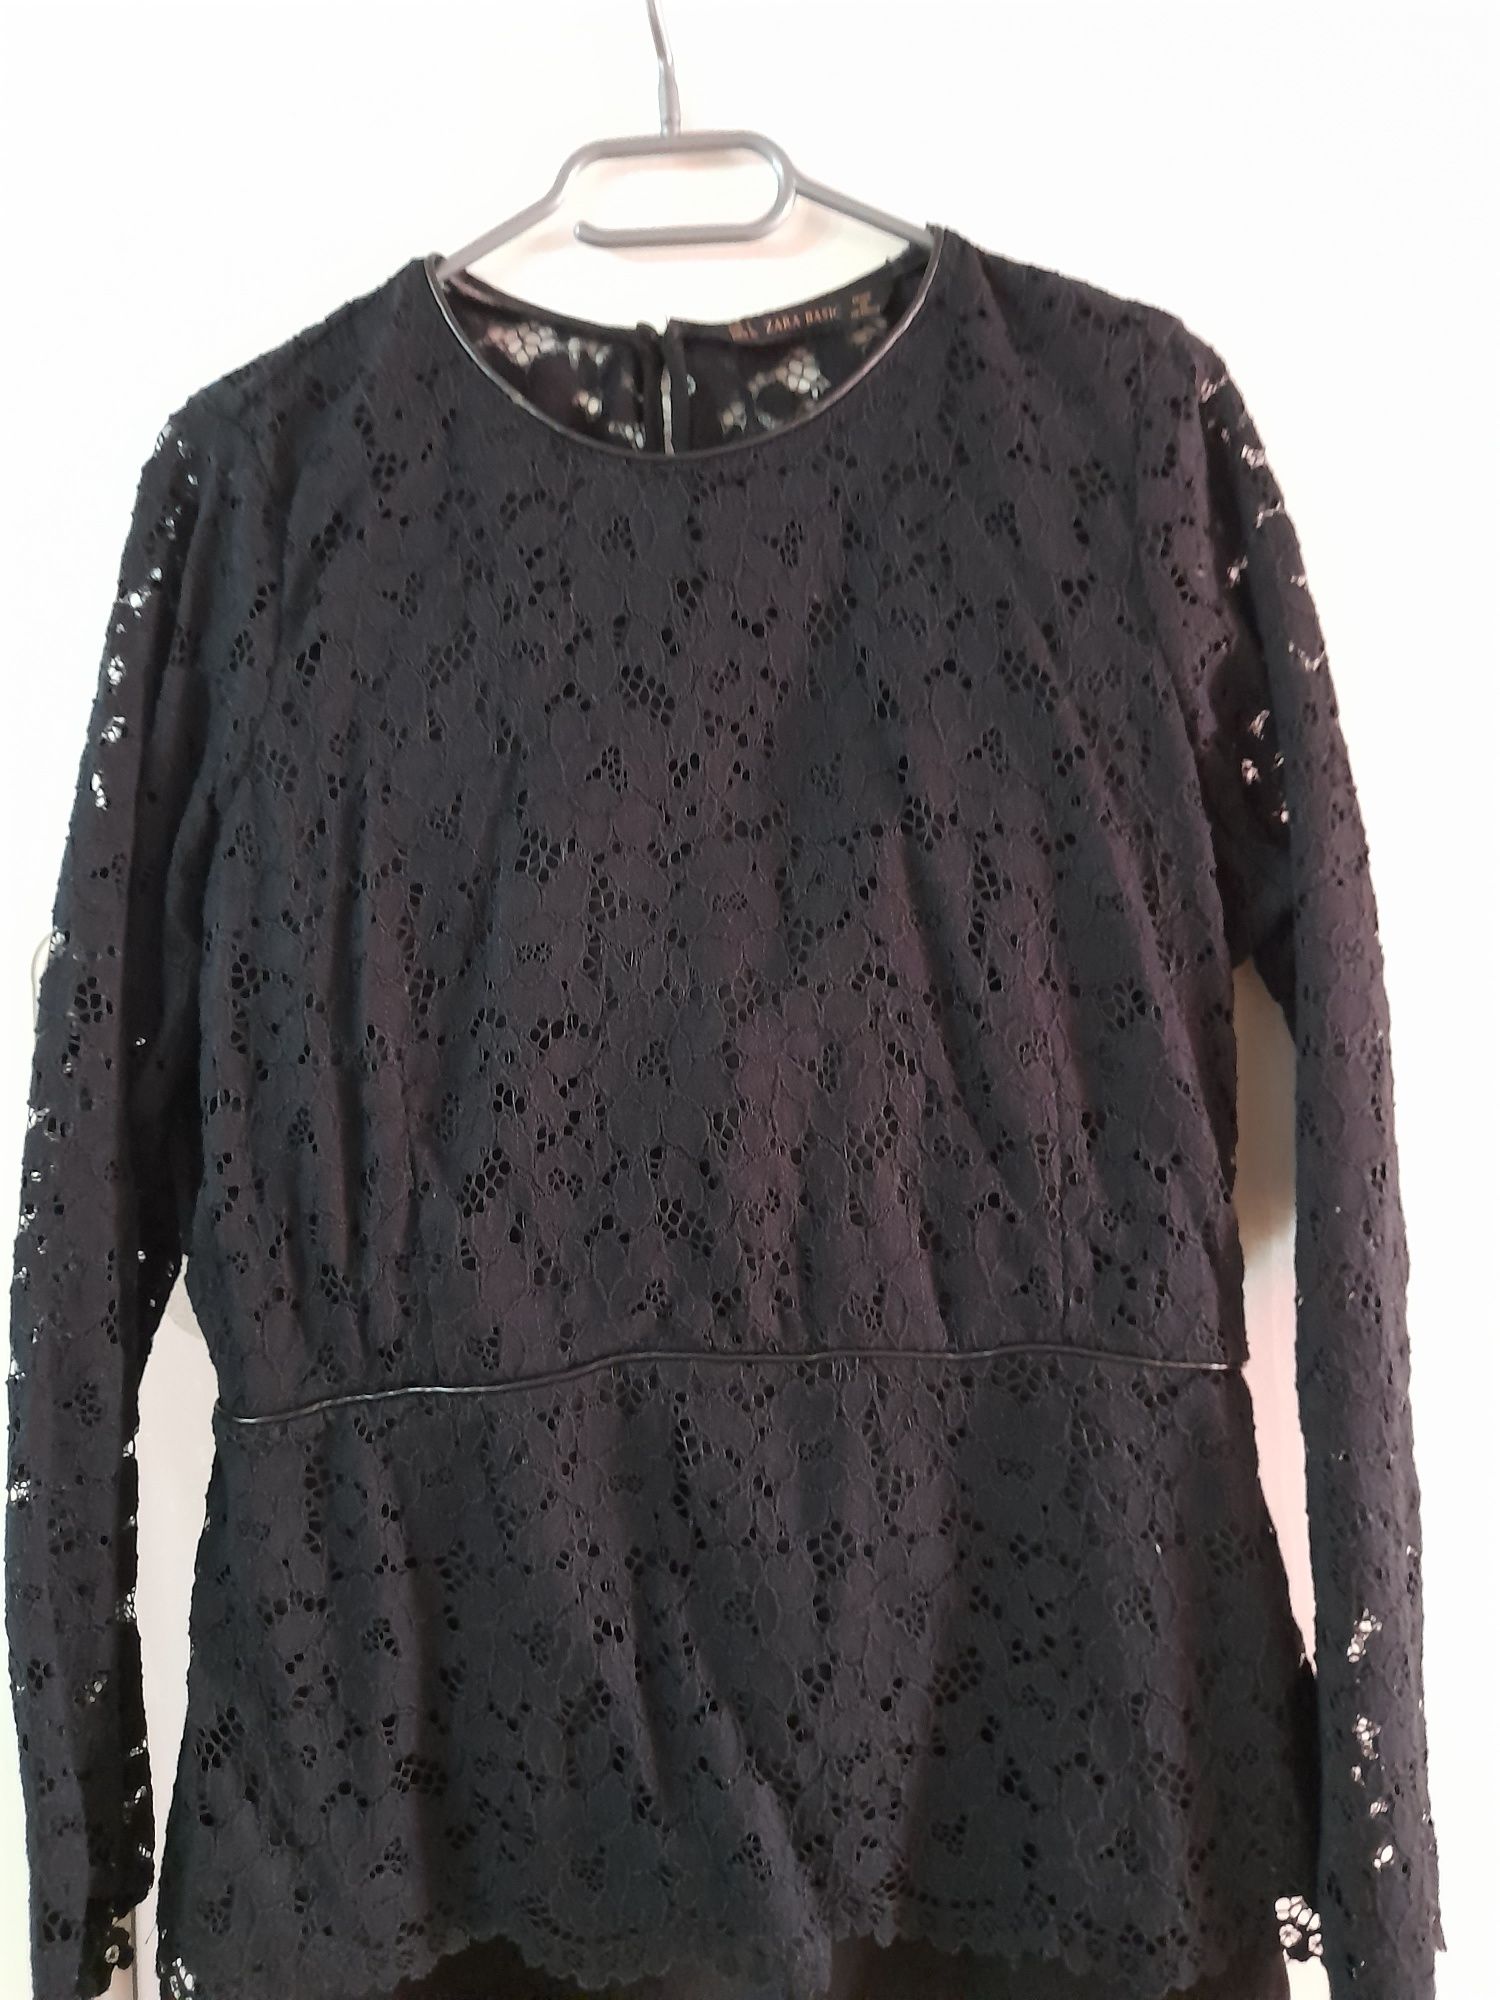 Zara, bluza dantela neagră mărimea L,  impecabila. Preț 65 lei.